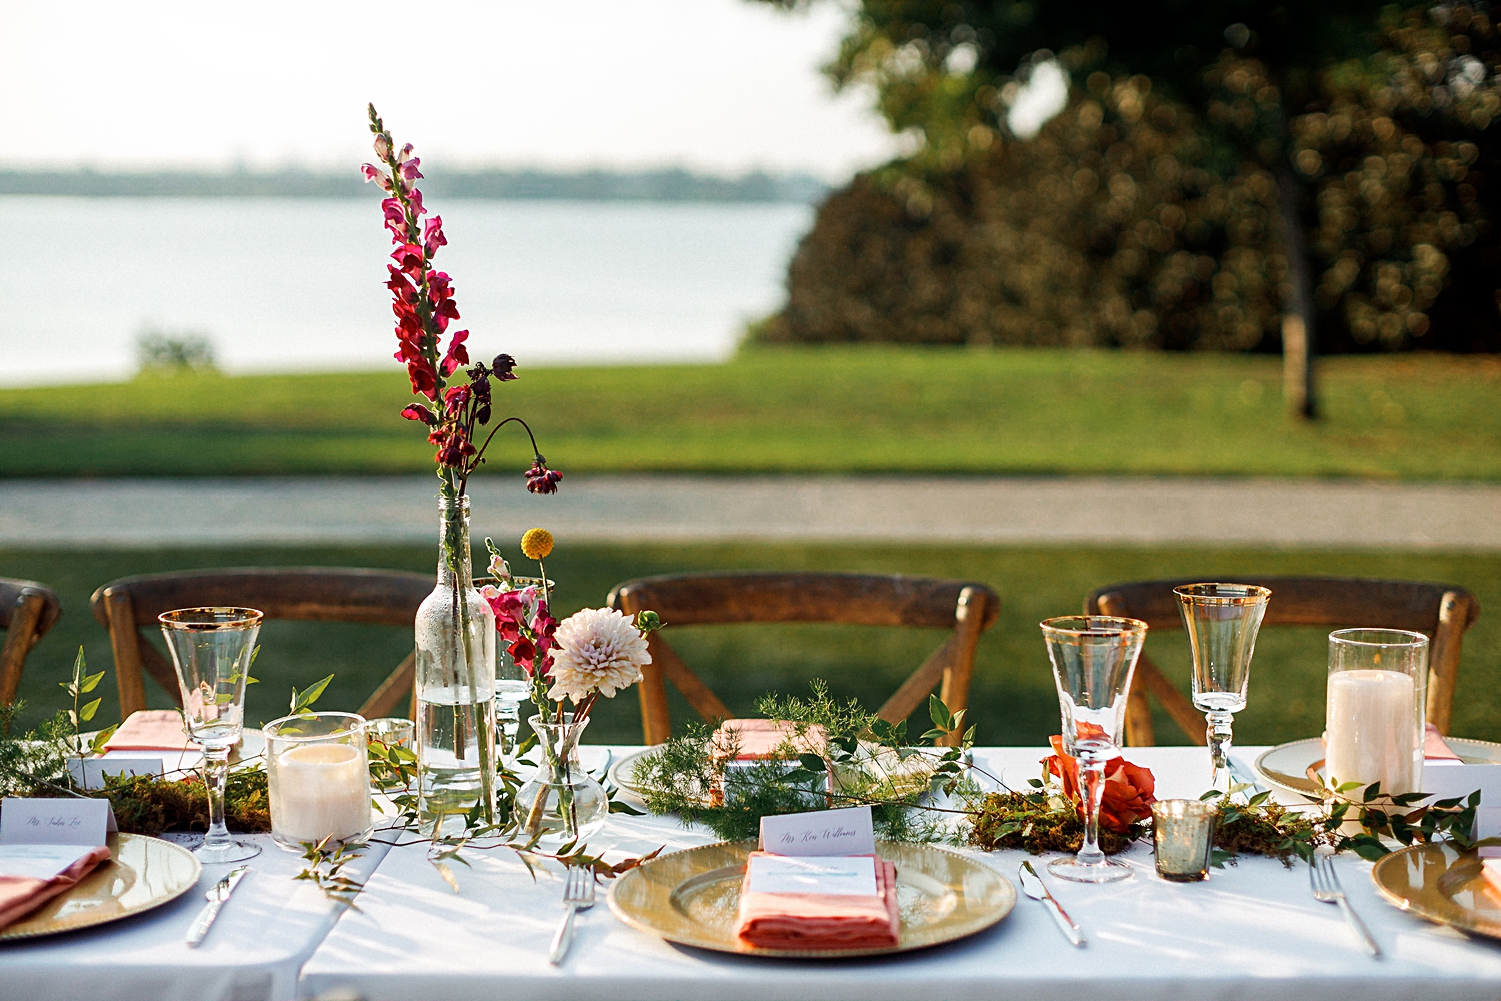 wedding reception table decor dallas arboretum outdoor centerpiece floral